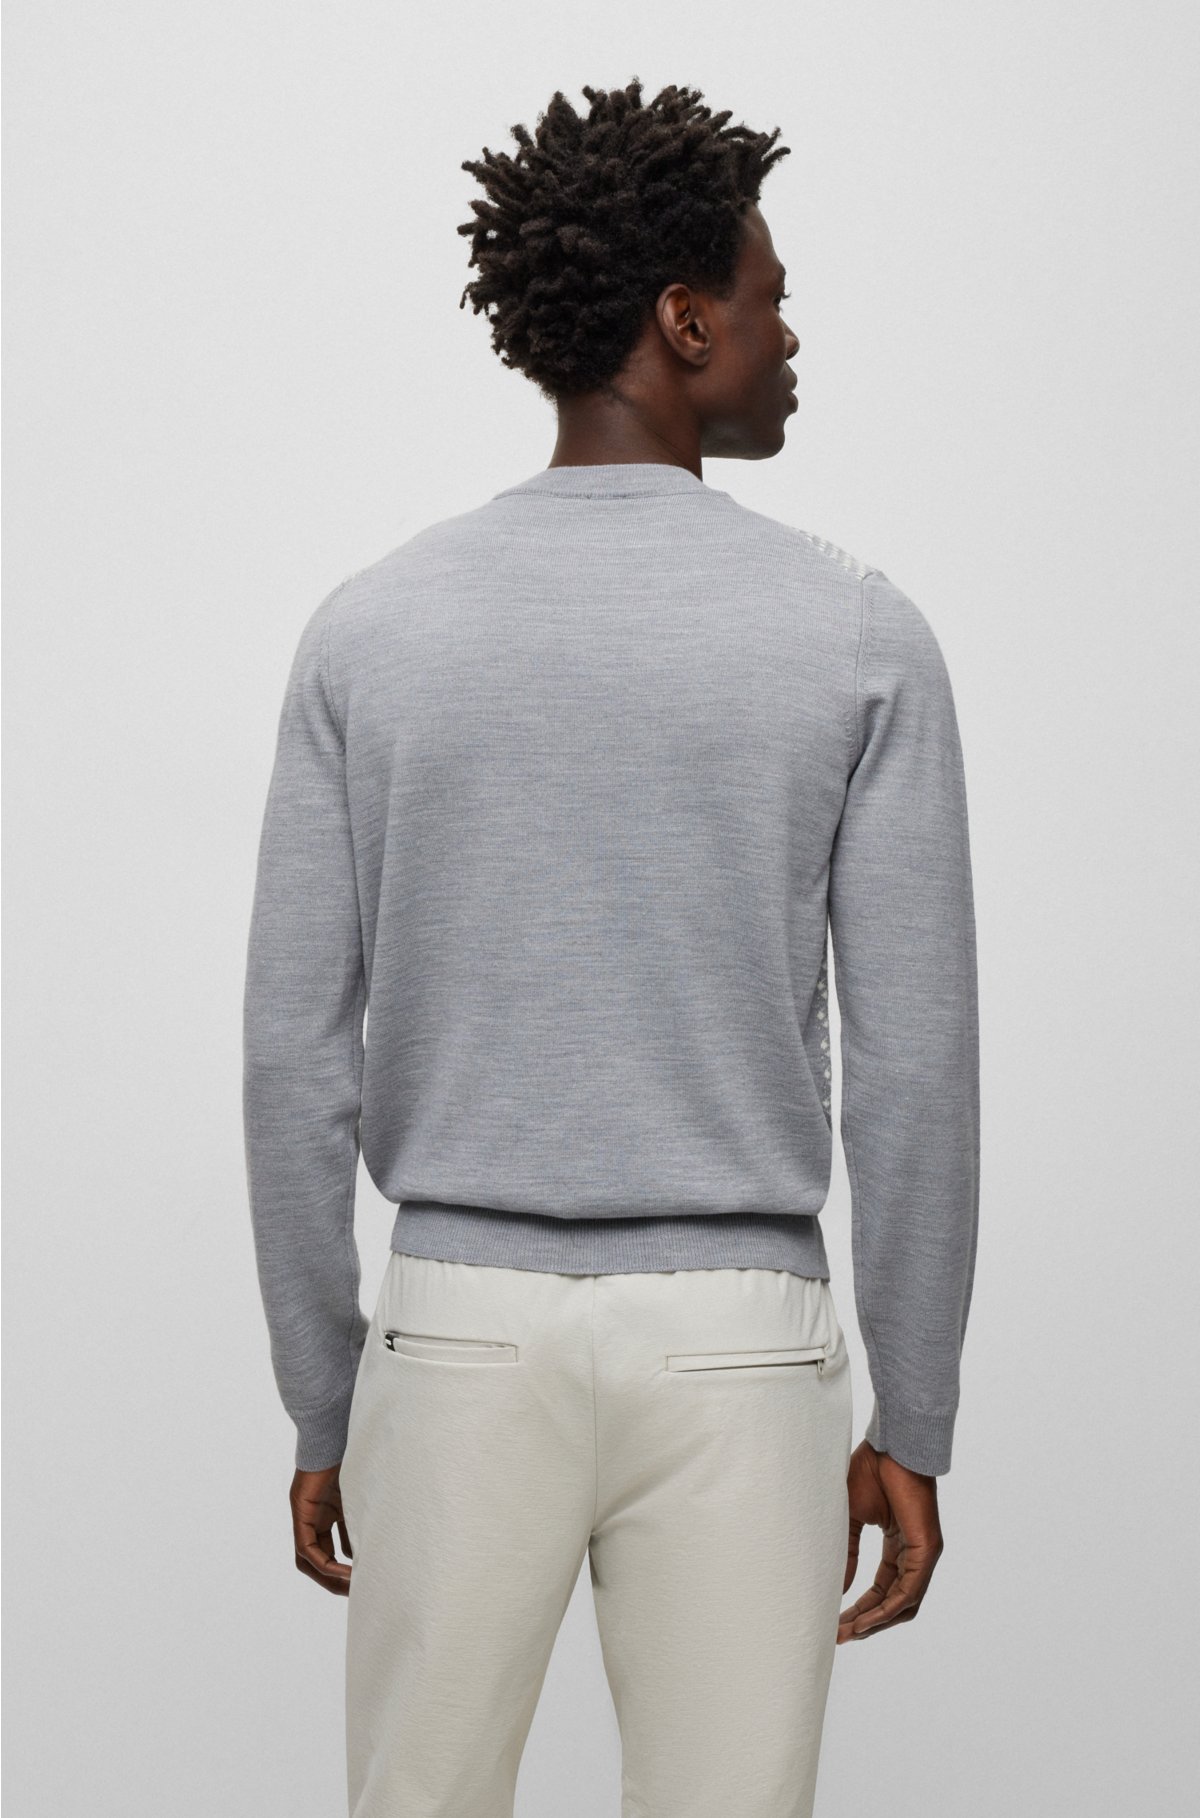 Tabla medidas Pantalones tejidos - El club del sweater